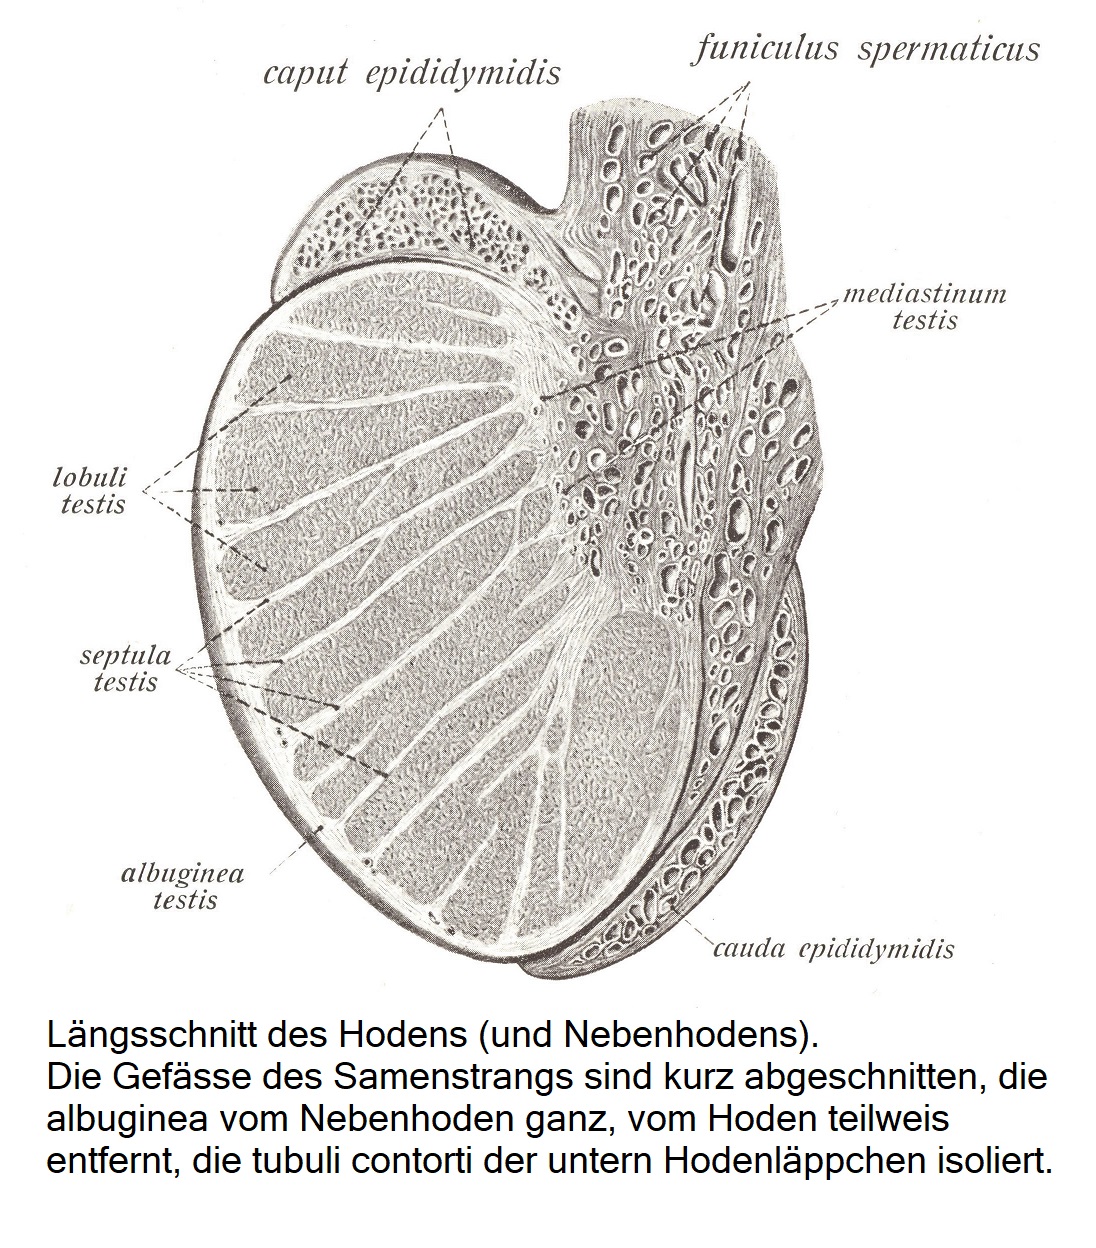 Samenleiter, ductus deferens, Samenblase, vesicula seminalis, und ductus ejaculatorii.